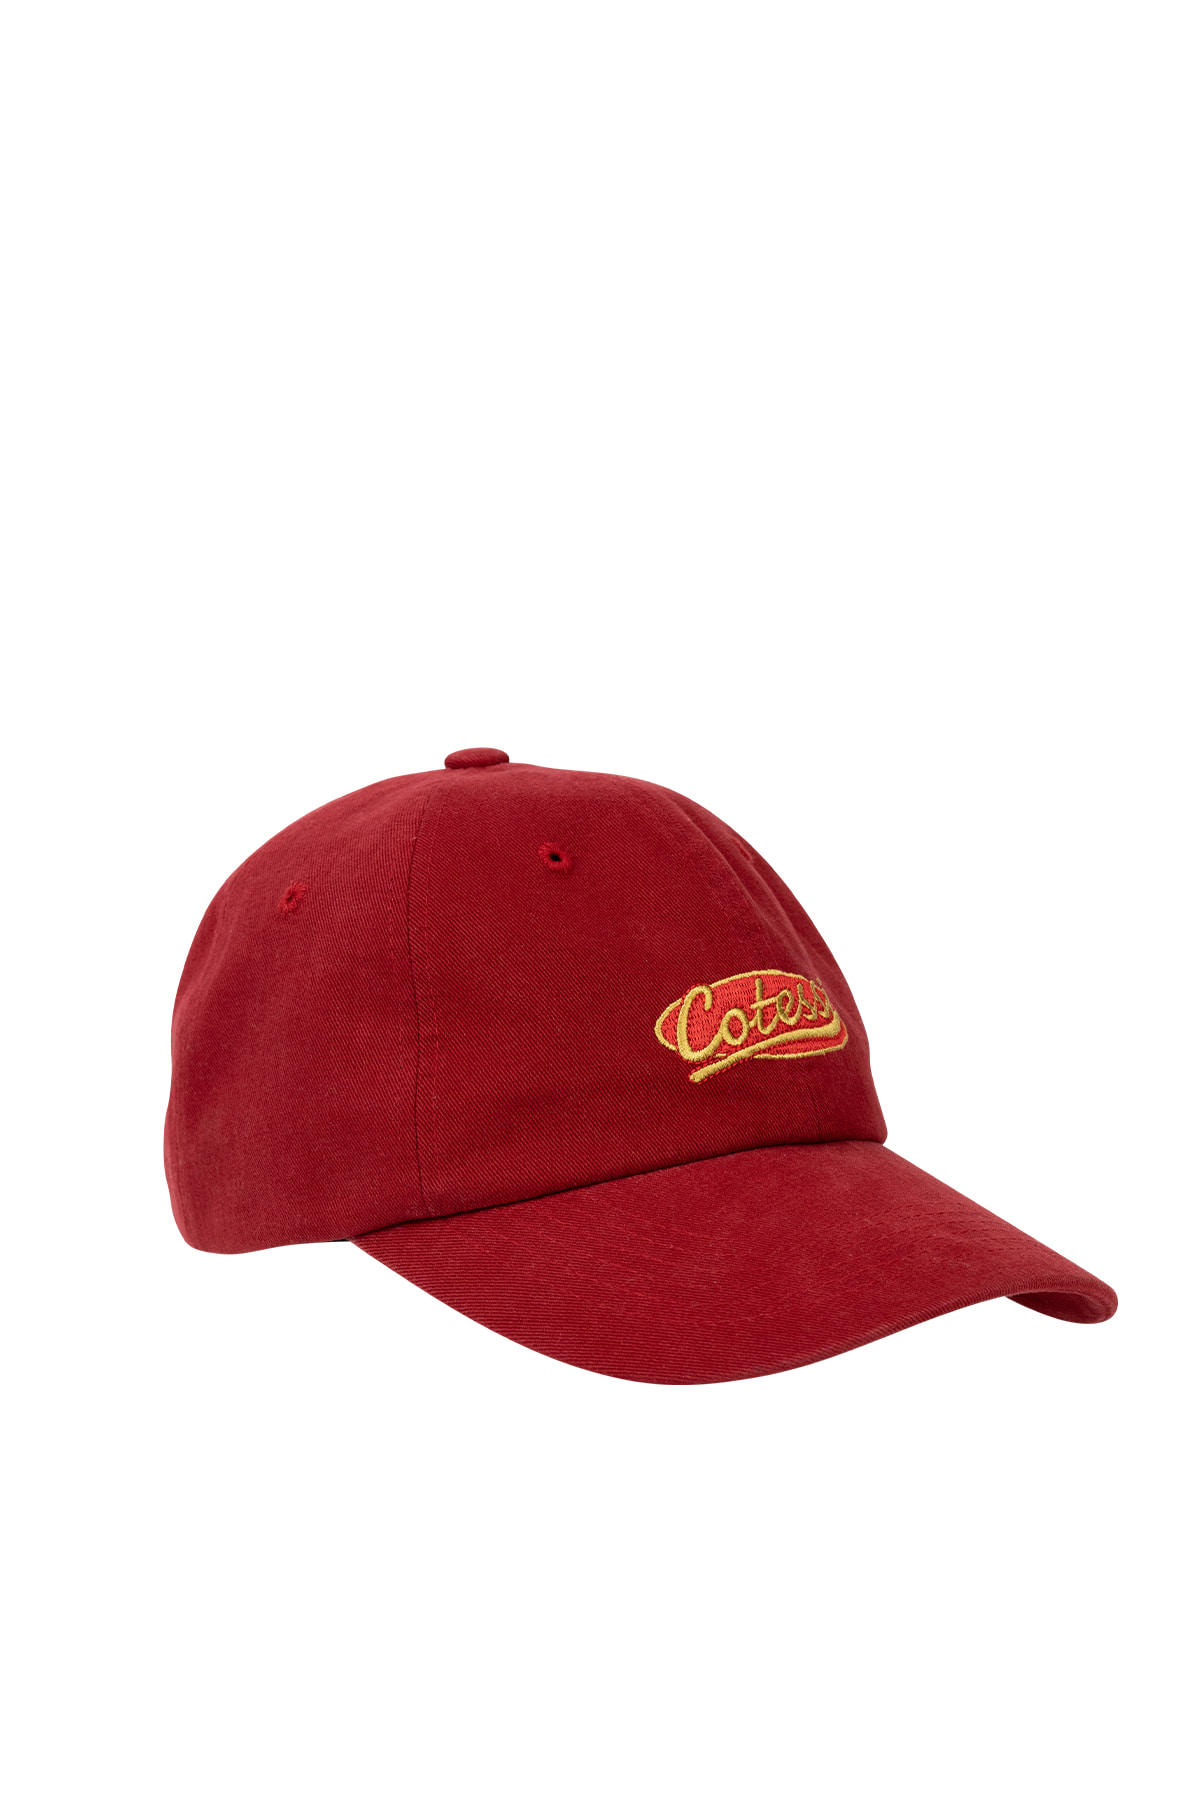 LOGO CAP, RED